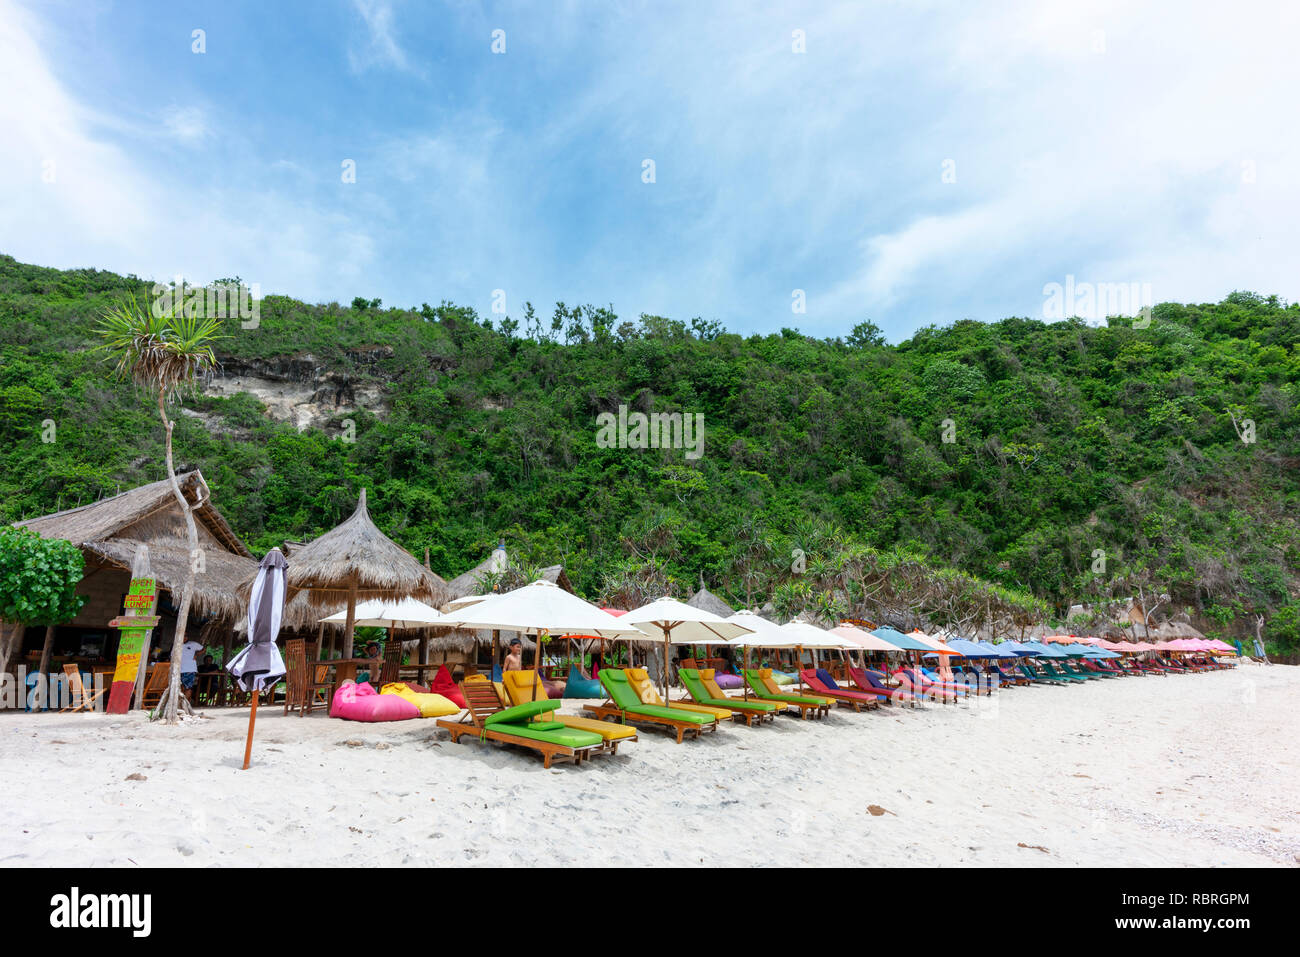 Des chaises longues sur la plage Atuh vacanciers attendent. Banque D'Images